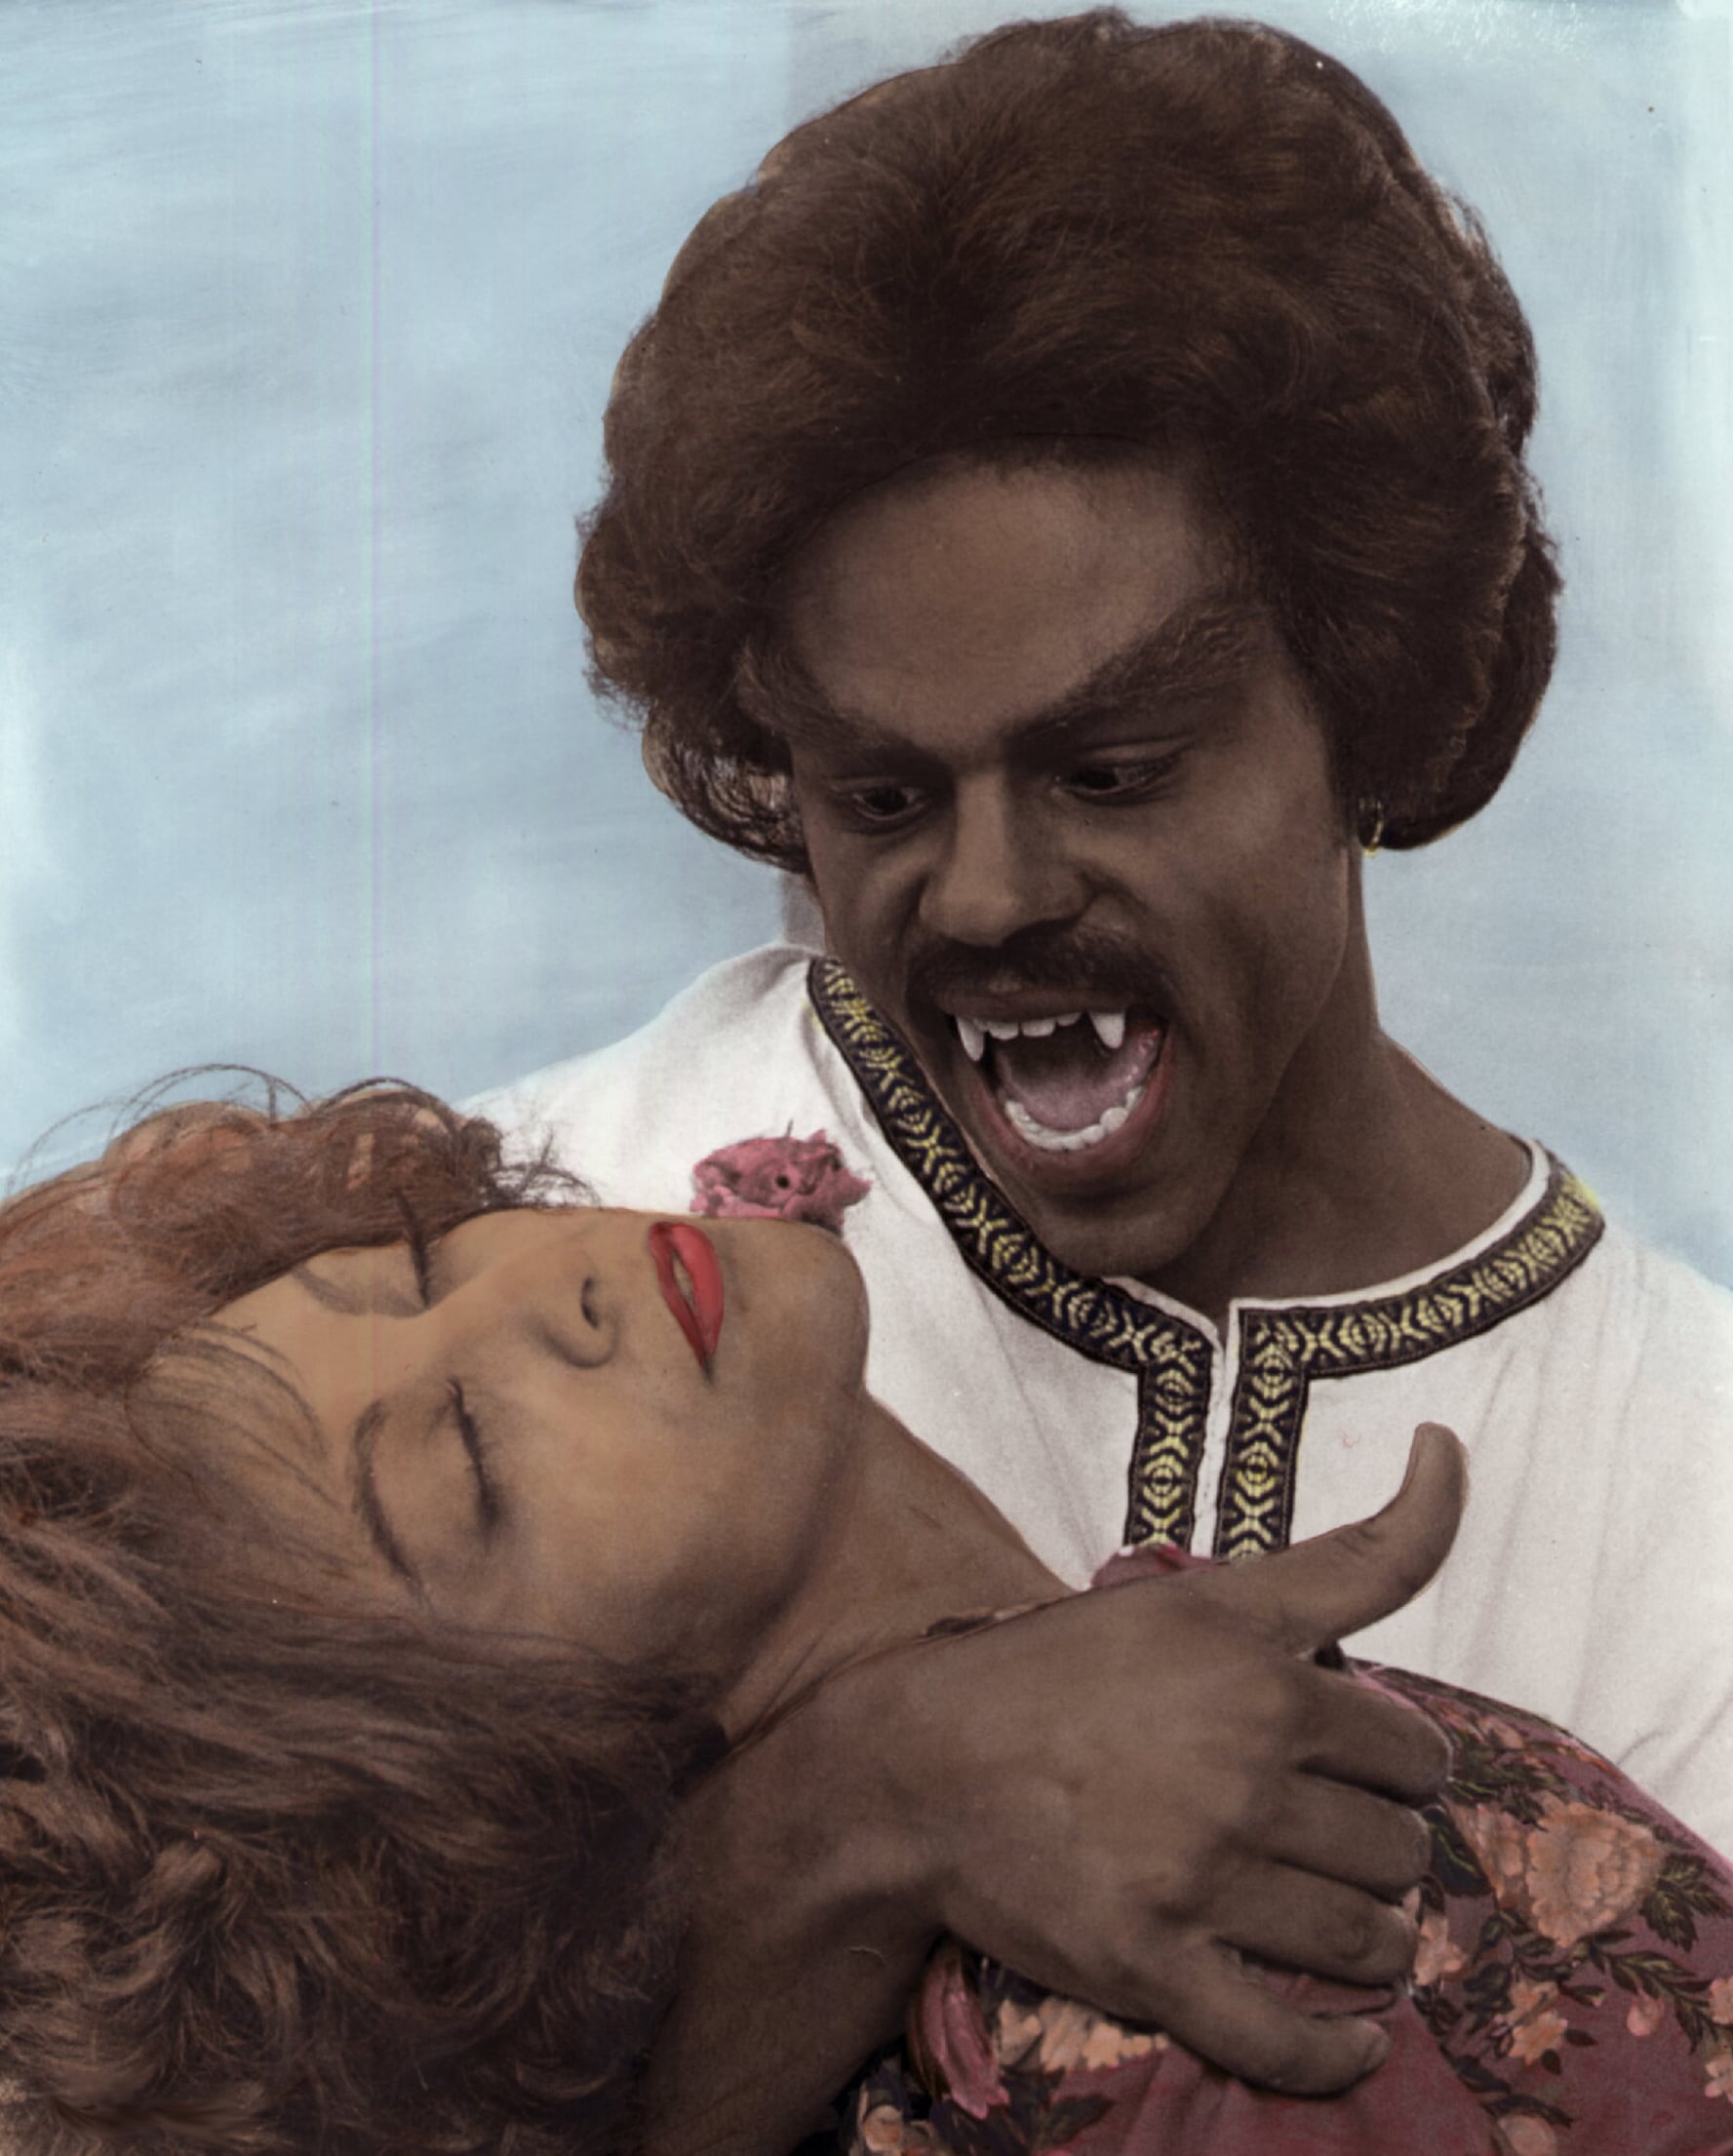 William Marshall y Pam Grier, dos iconos del movimiento 'blaxploitation' y de la representación negra en el cine, en la secuela '¡Grita, Blácula, grita!'.